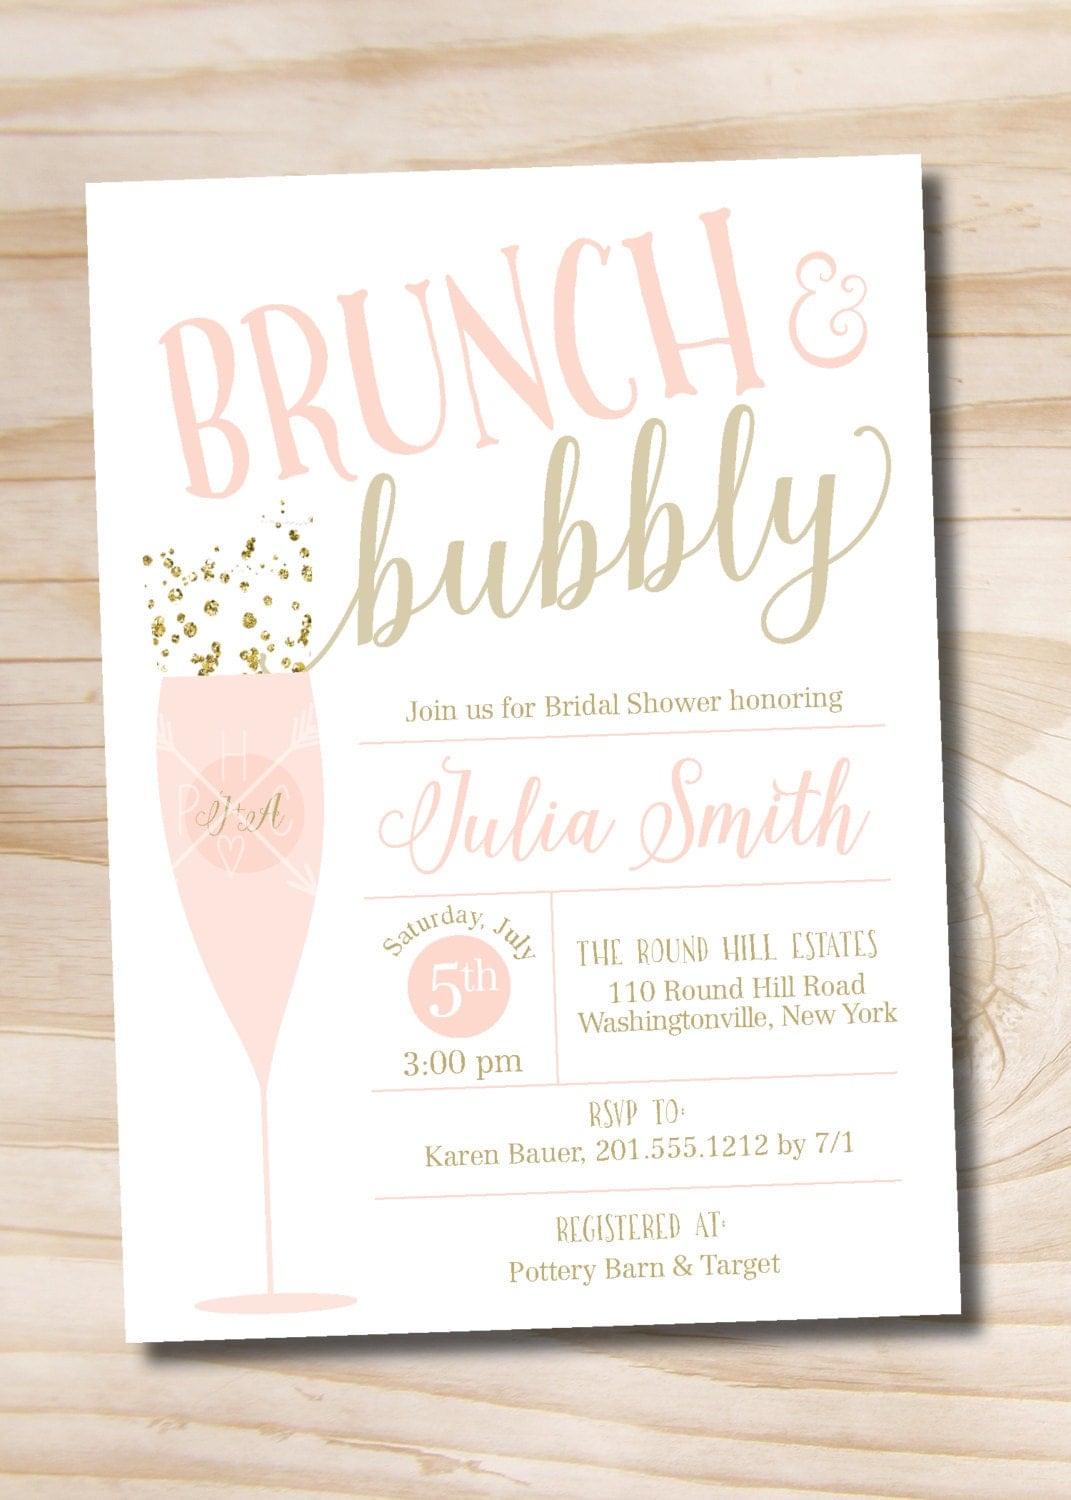 brunch-and-bubbly-bridal-shower-invitation-confetti-glitter